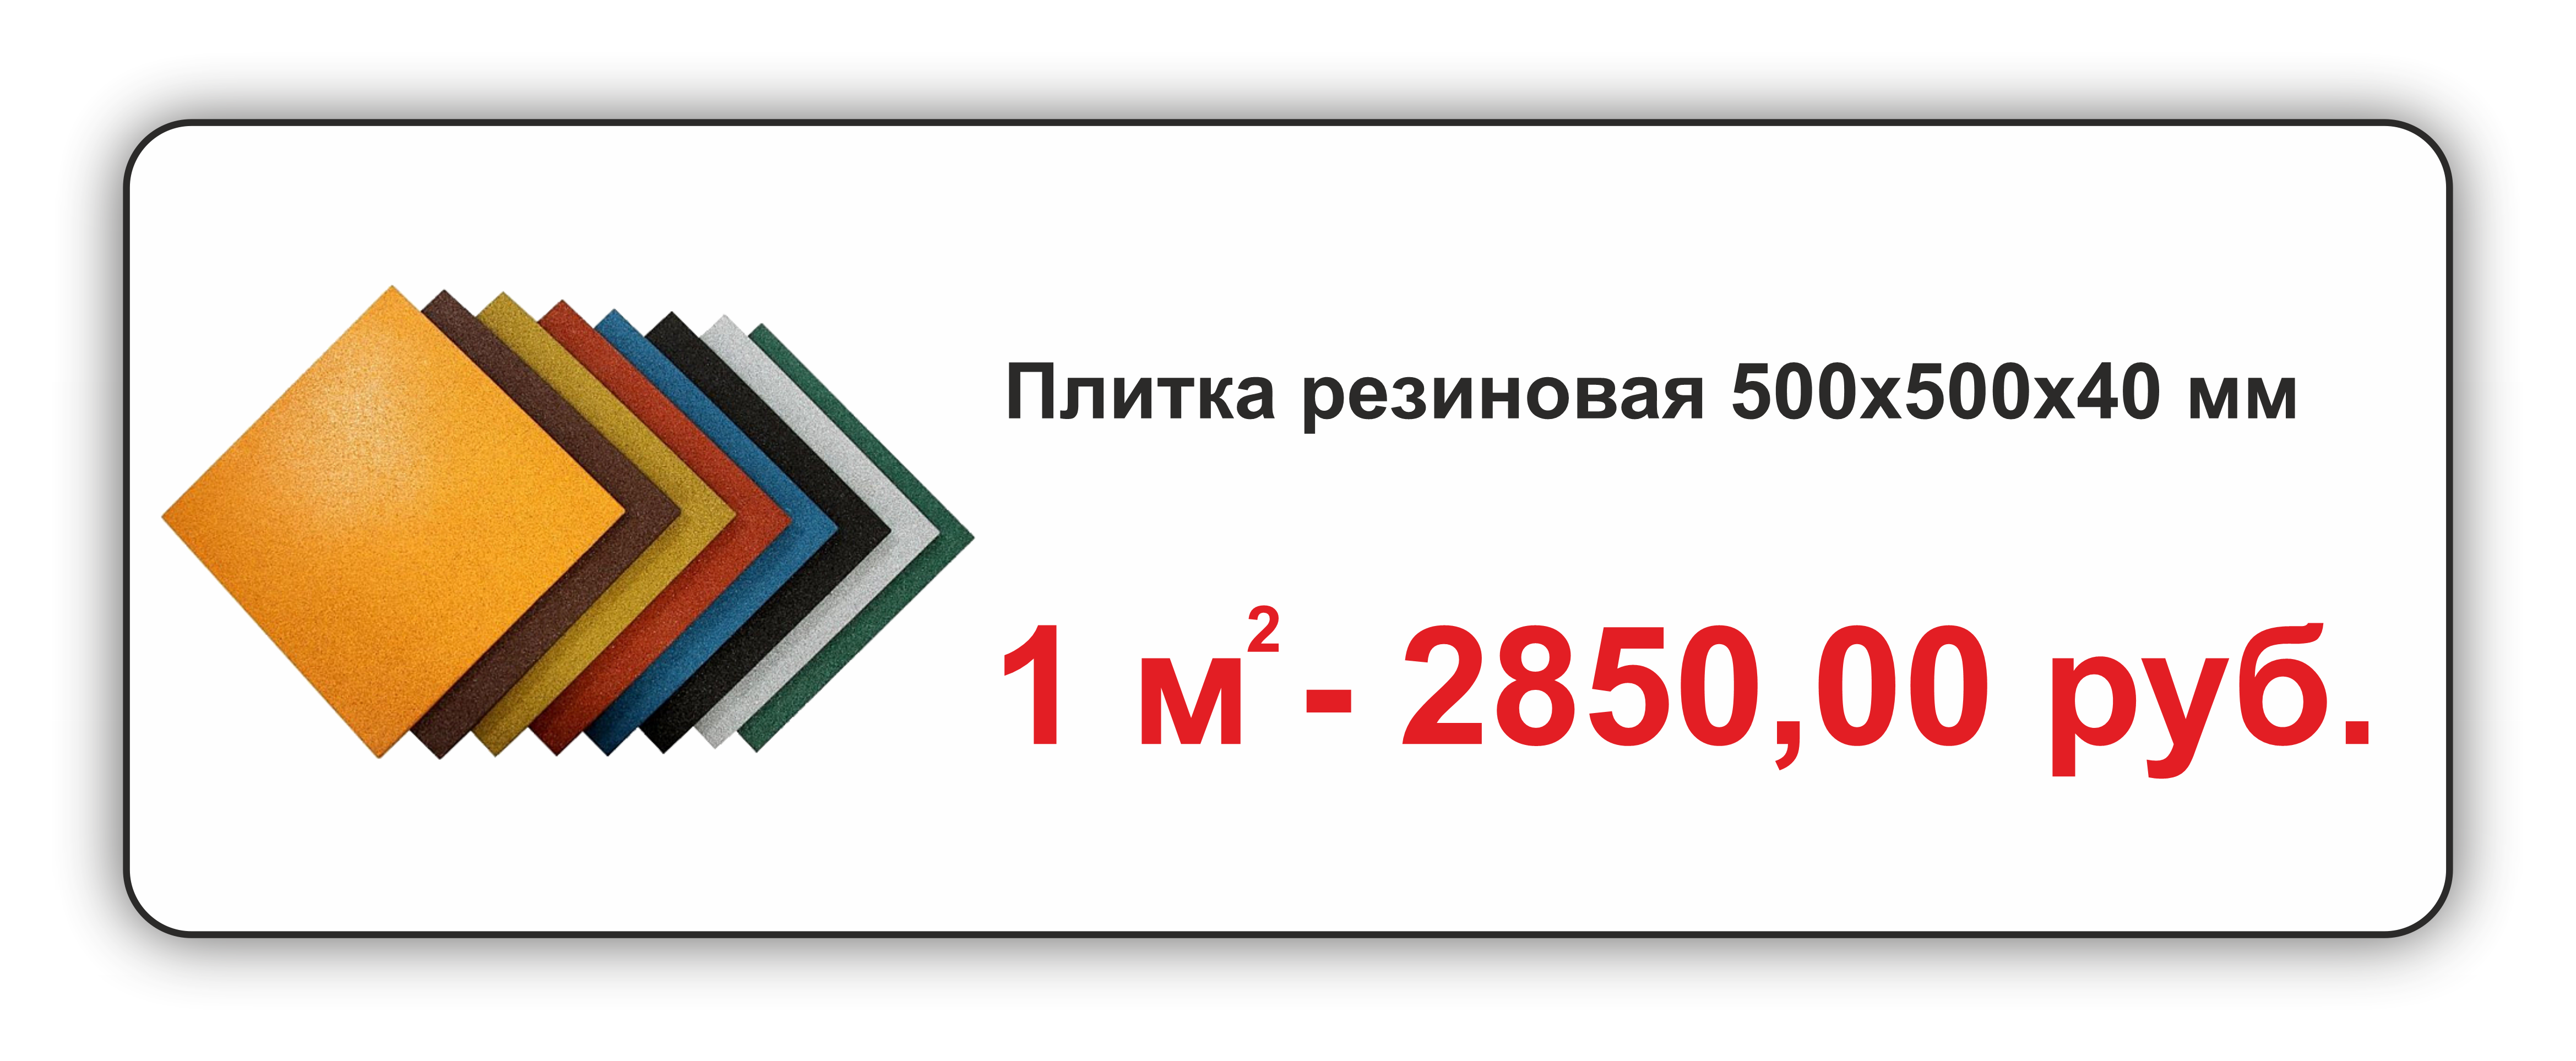 Резиновая плитка 500х500х40мм от производителя Крым